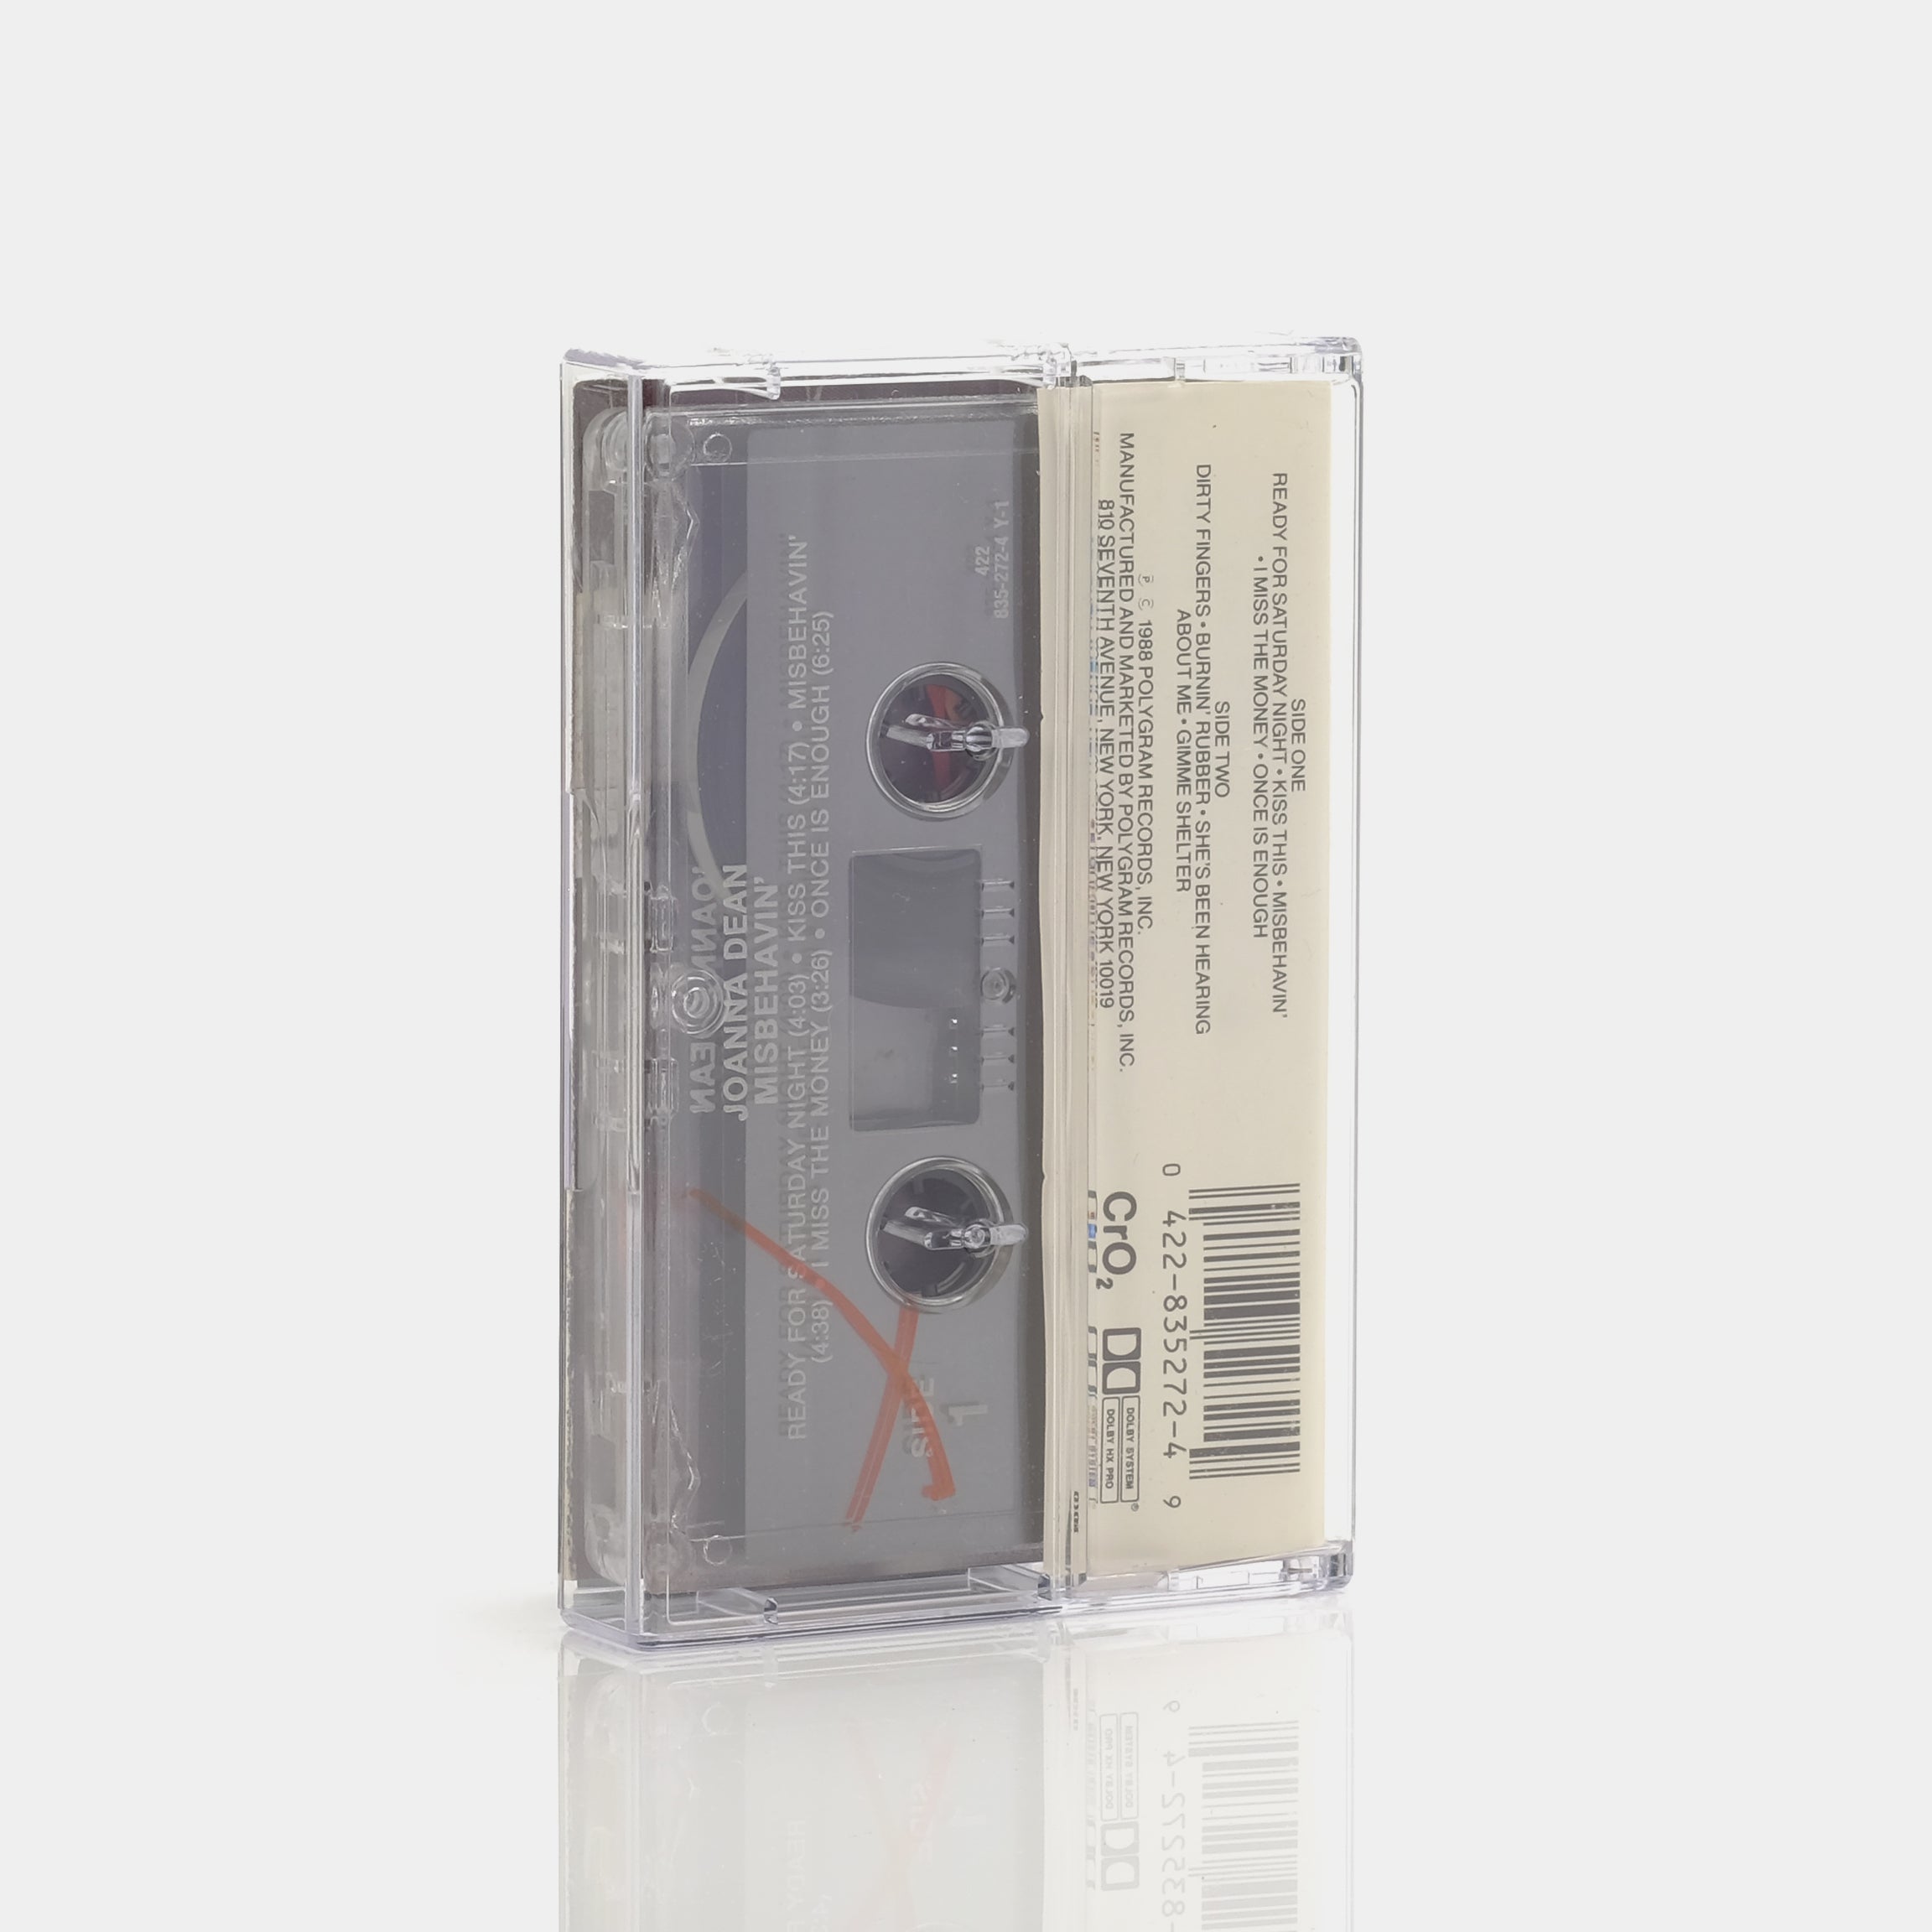 Joanna Dean - Misbehavin' Cassette Tape